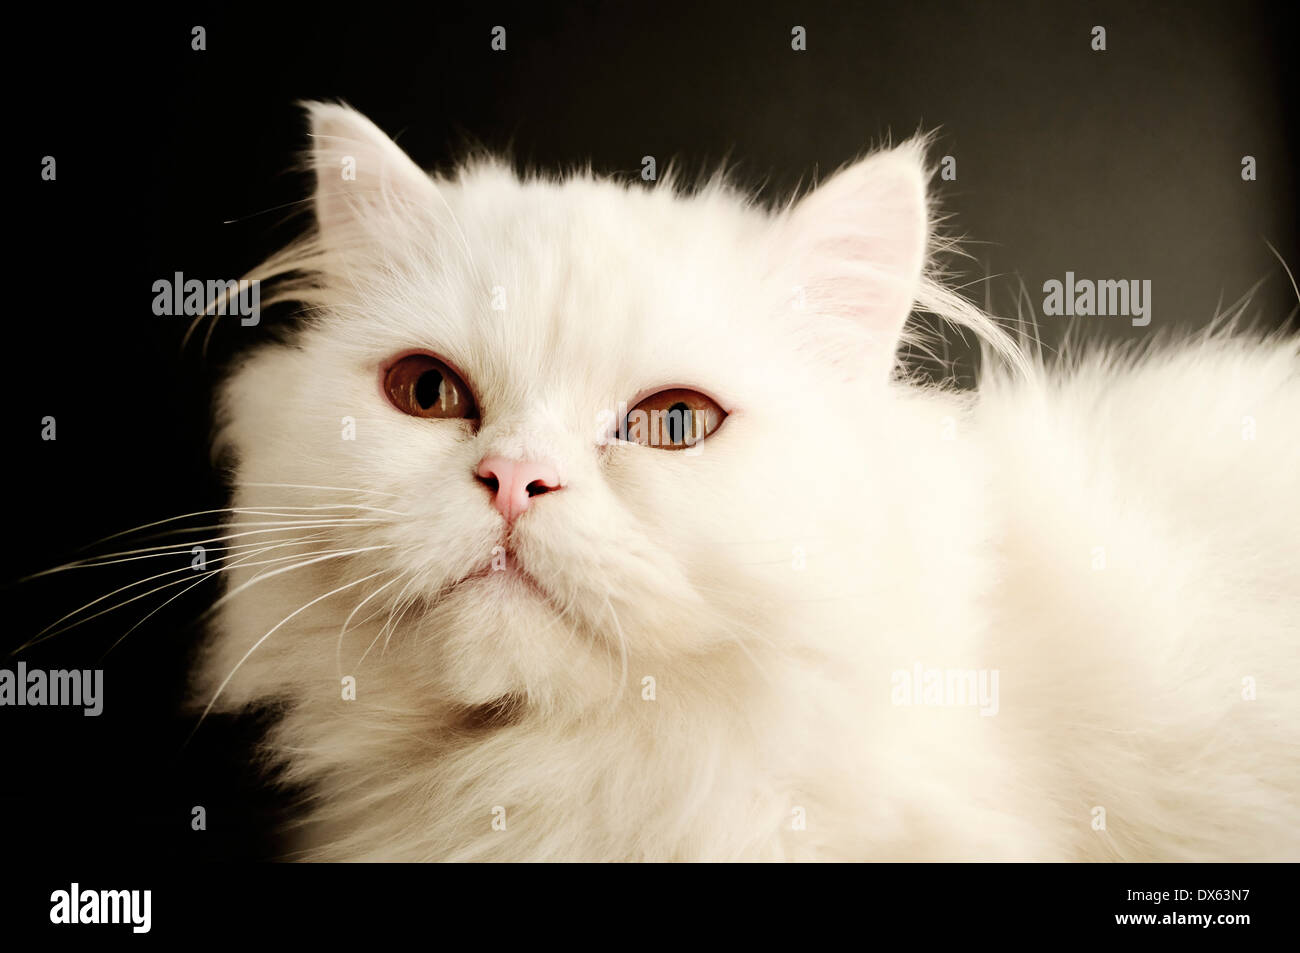 Beautiful white cat Stock Photo